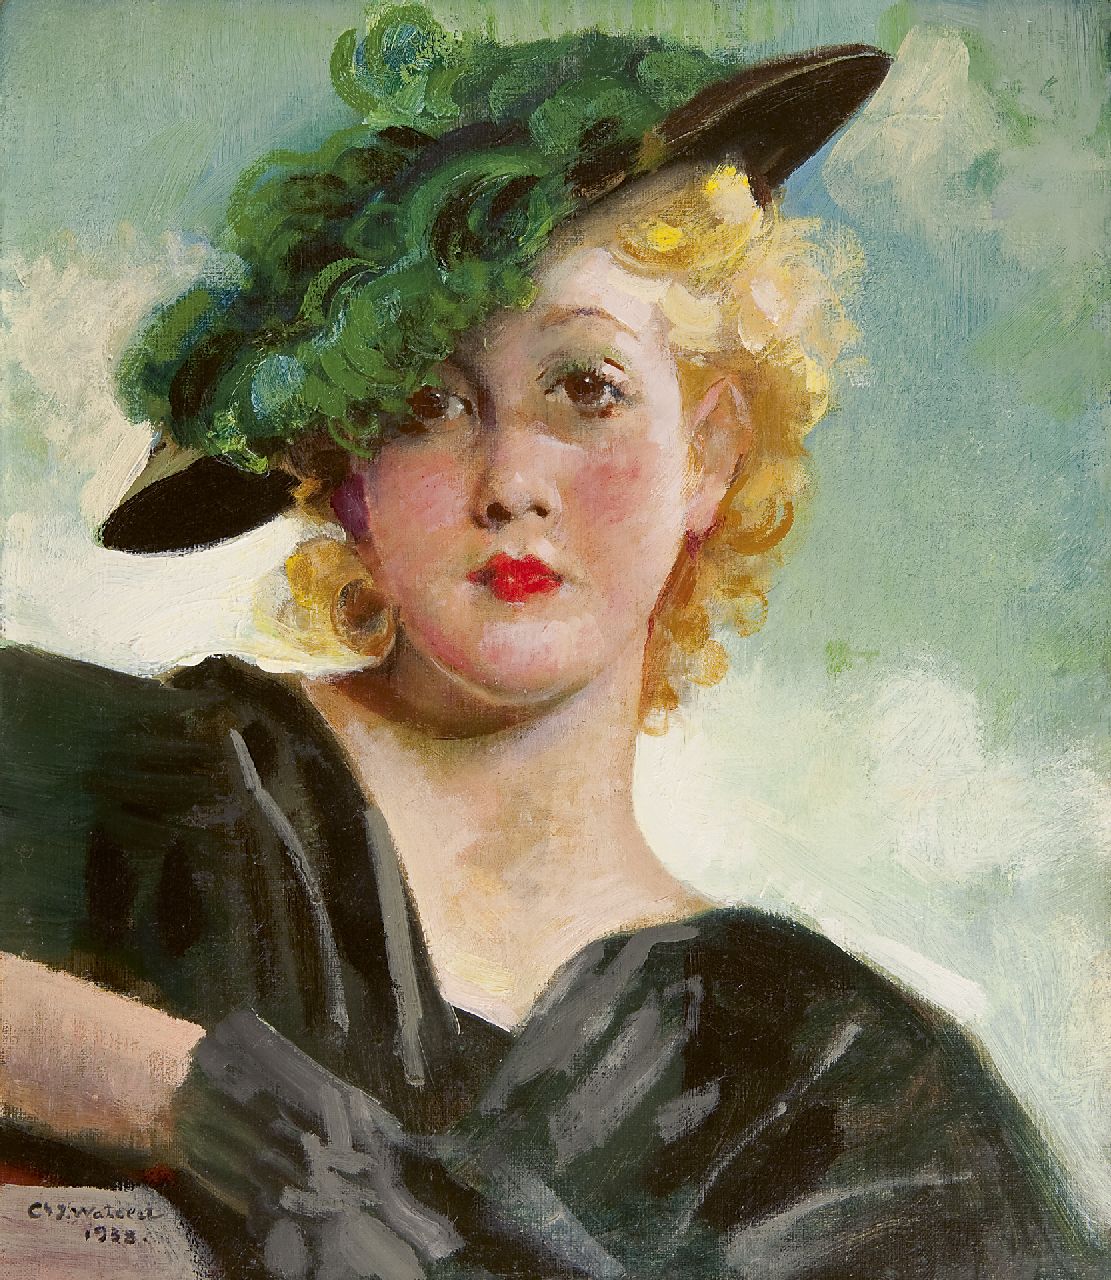 Watelet C.J.  | 'Charles' Joseph Watelet, Vrouw met groene hoed, olieverf op doek 40,1 x 34,9 cm, gesigneerd linksonder en gedateerd 1938